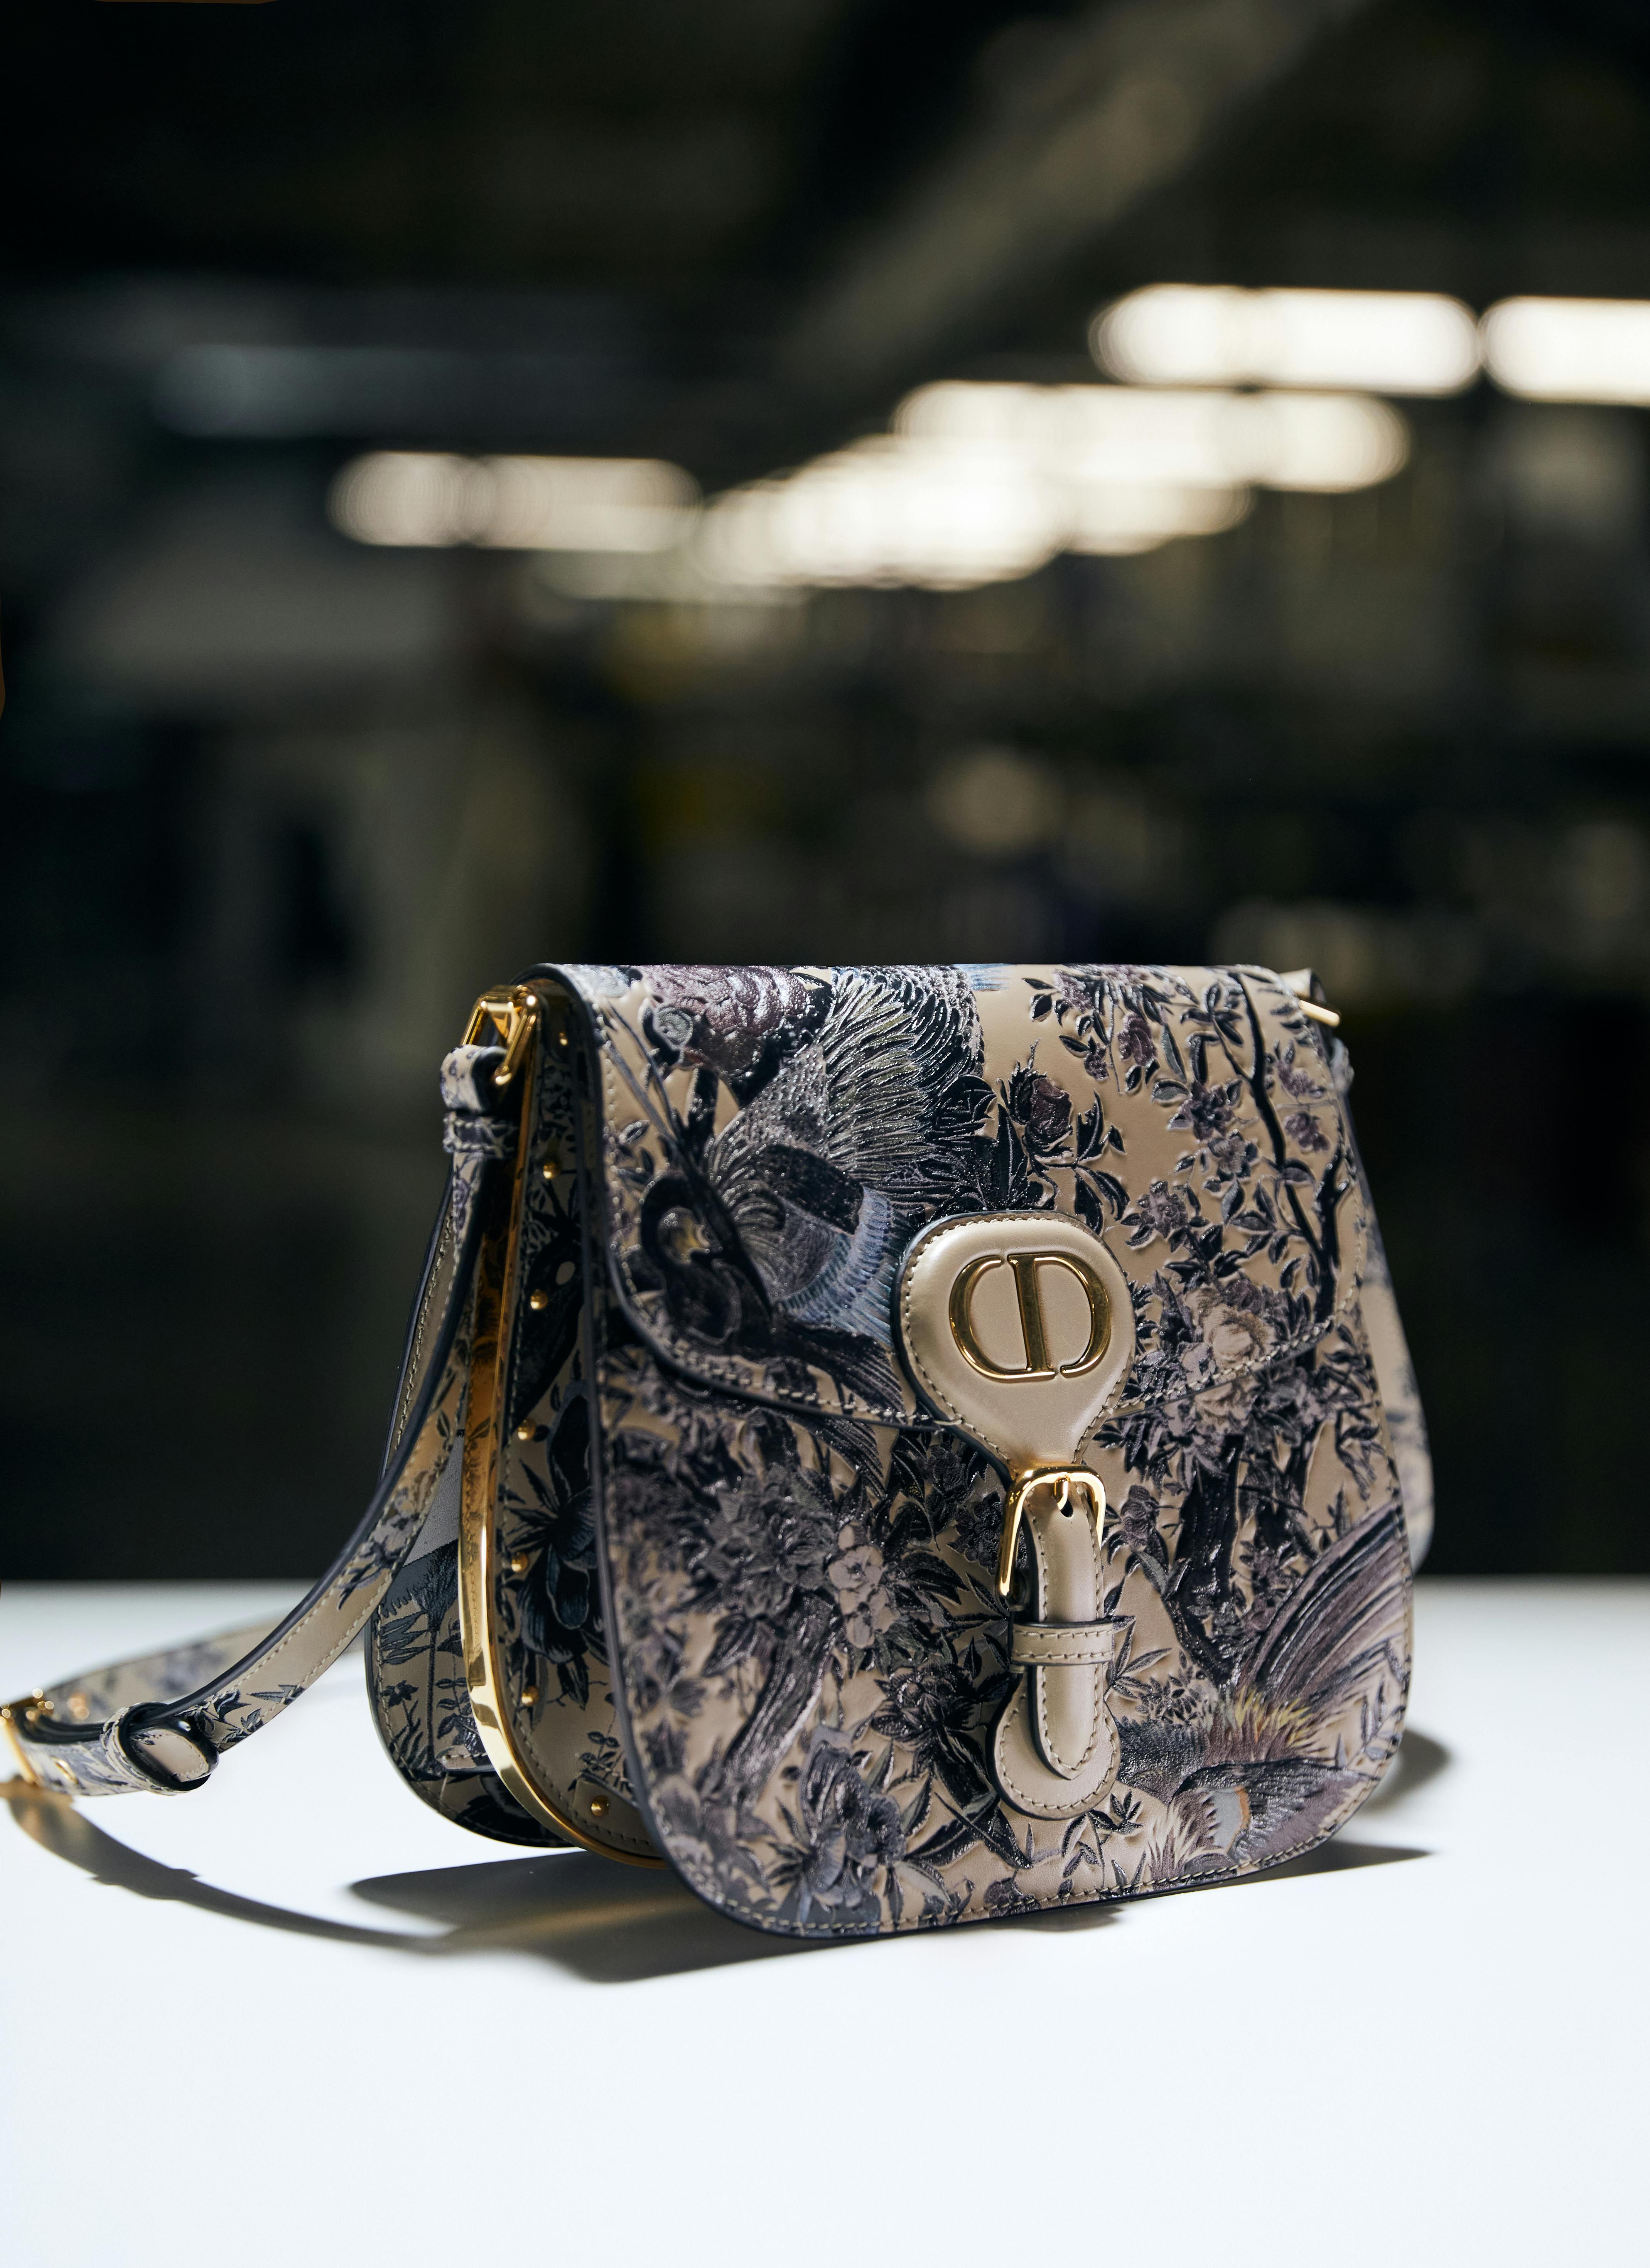 Dior's neue Bobby Frame Bag: Eine it-Tasche, die wir jetzt schon lieben